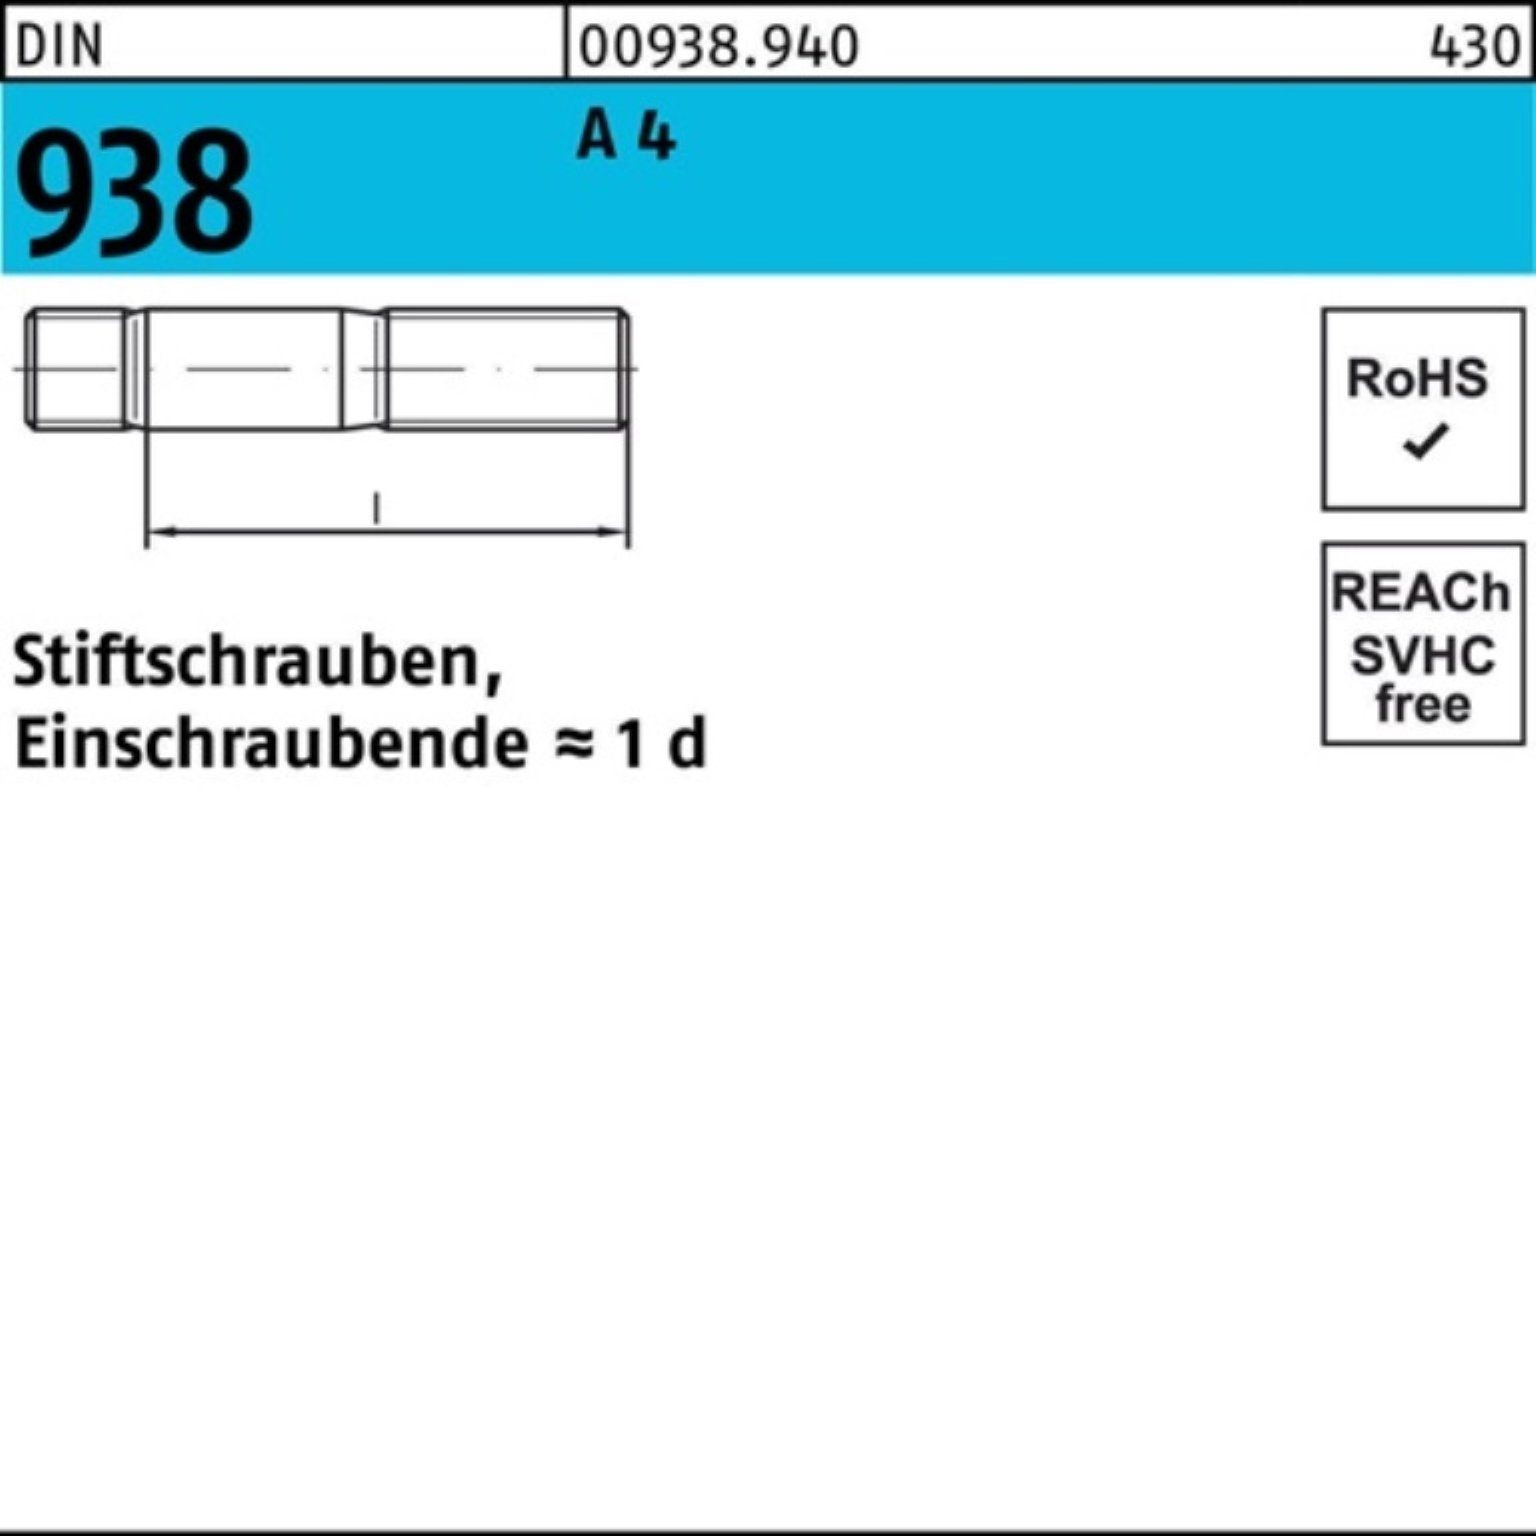 Stück 938 A Reyher Sti DIN Pack Stiftschraube M10x 100er Stiftschraube 4 DIN A 25 30 938 4